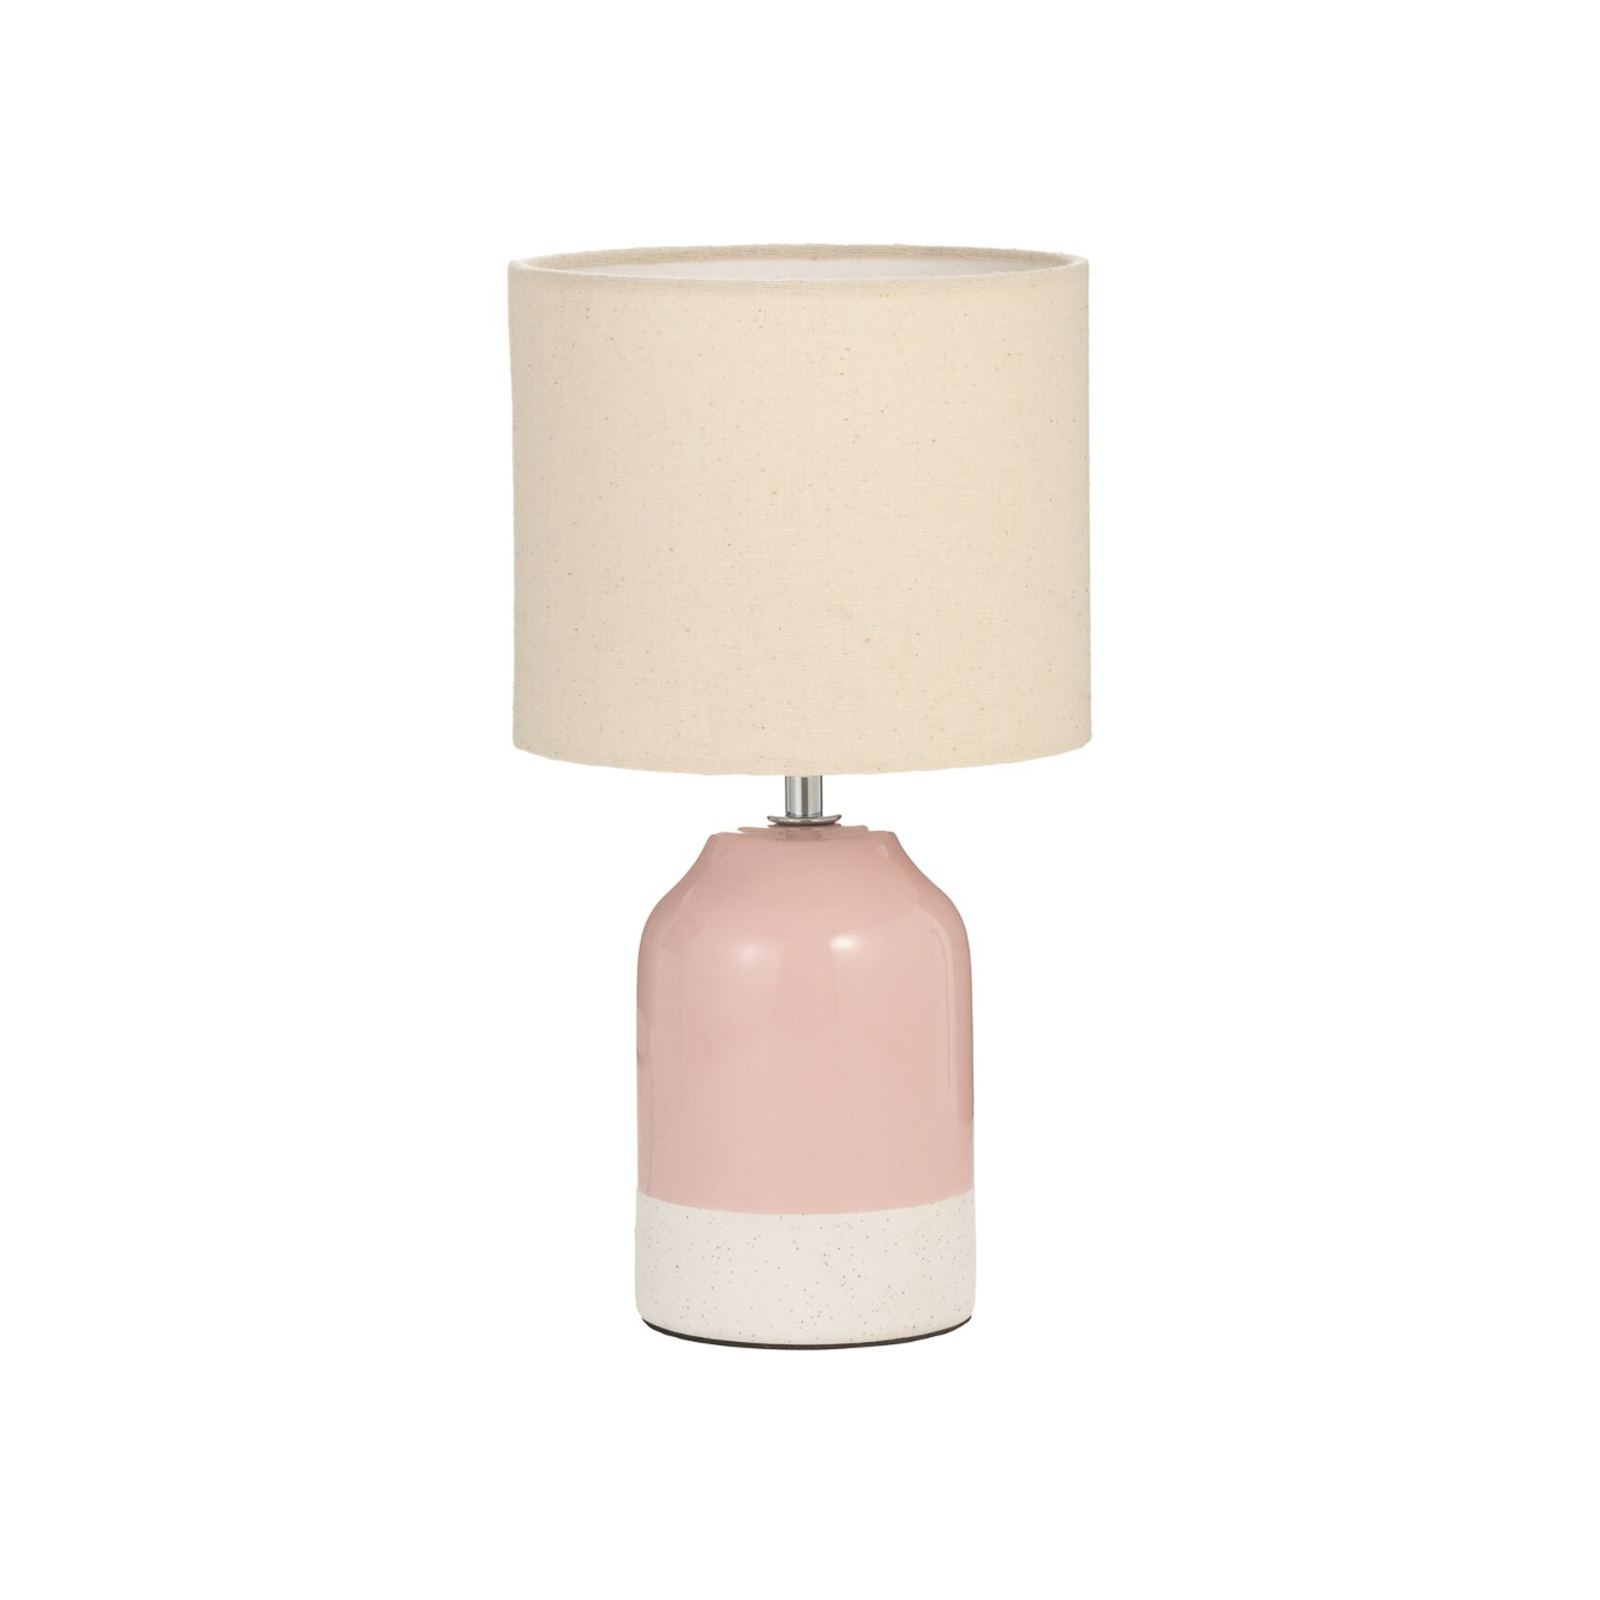 Pauleen Sandy Glow stolová lampa, krémová/ružová